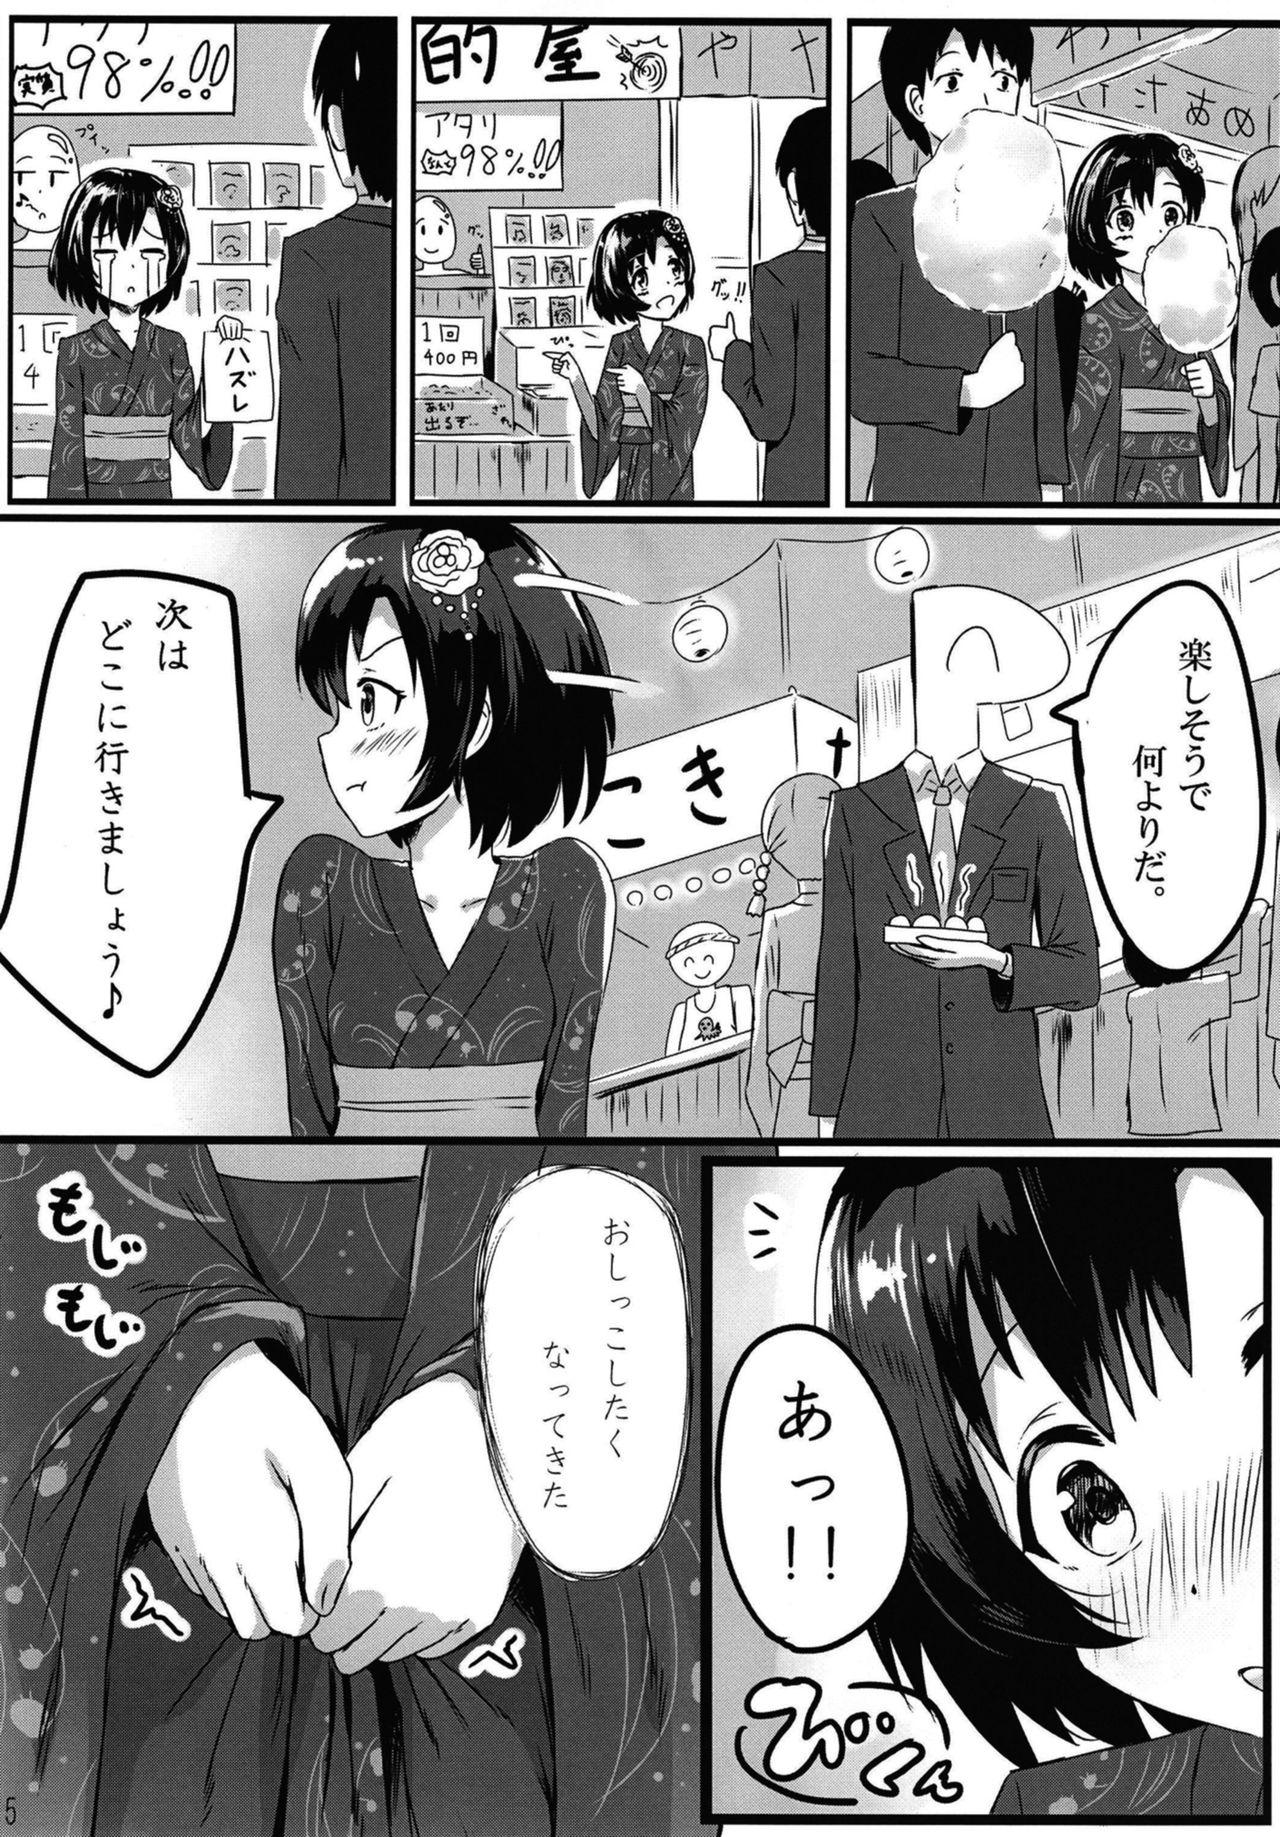 Retro Shiragiku Hotaru no kore o Mitemo... Kirai ni naranai de Kudasai - The idolmaster Asstomouth - Page 5